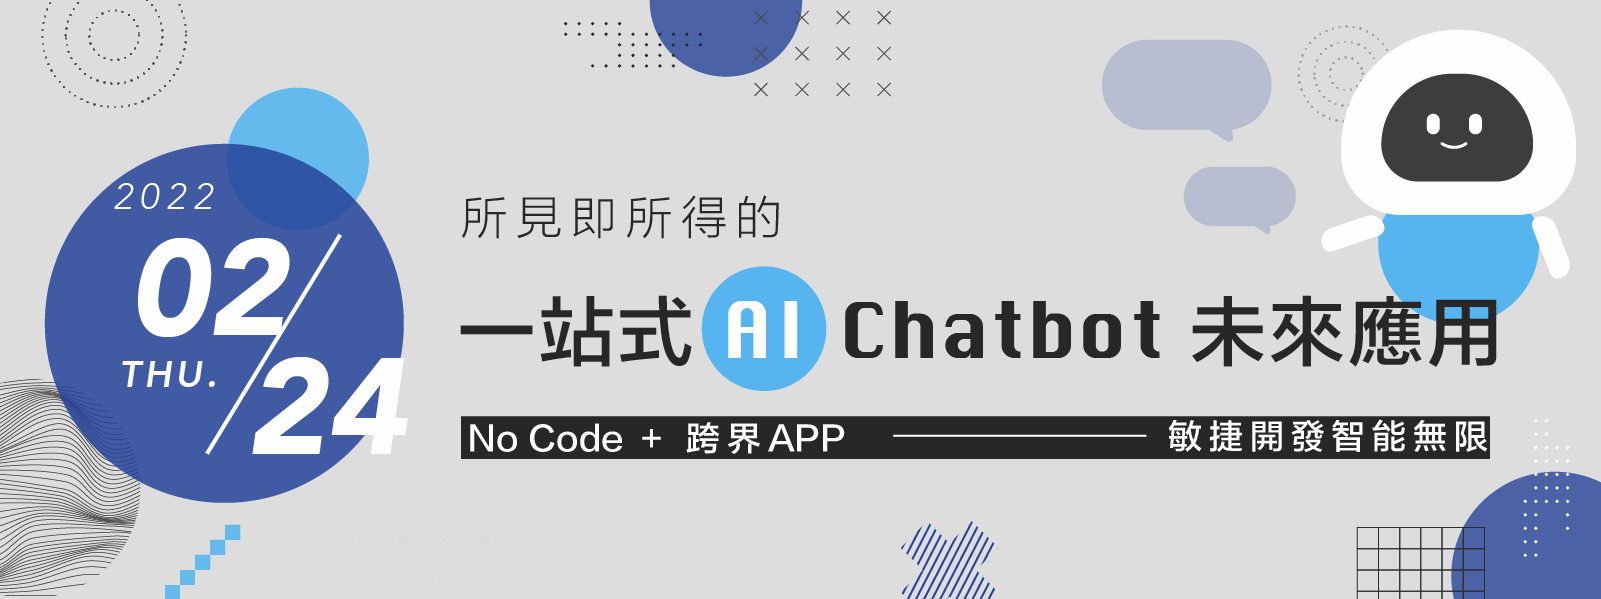 所見即所得的一站式AI Chatbot未來應用